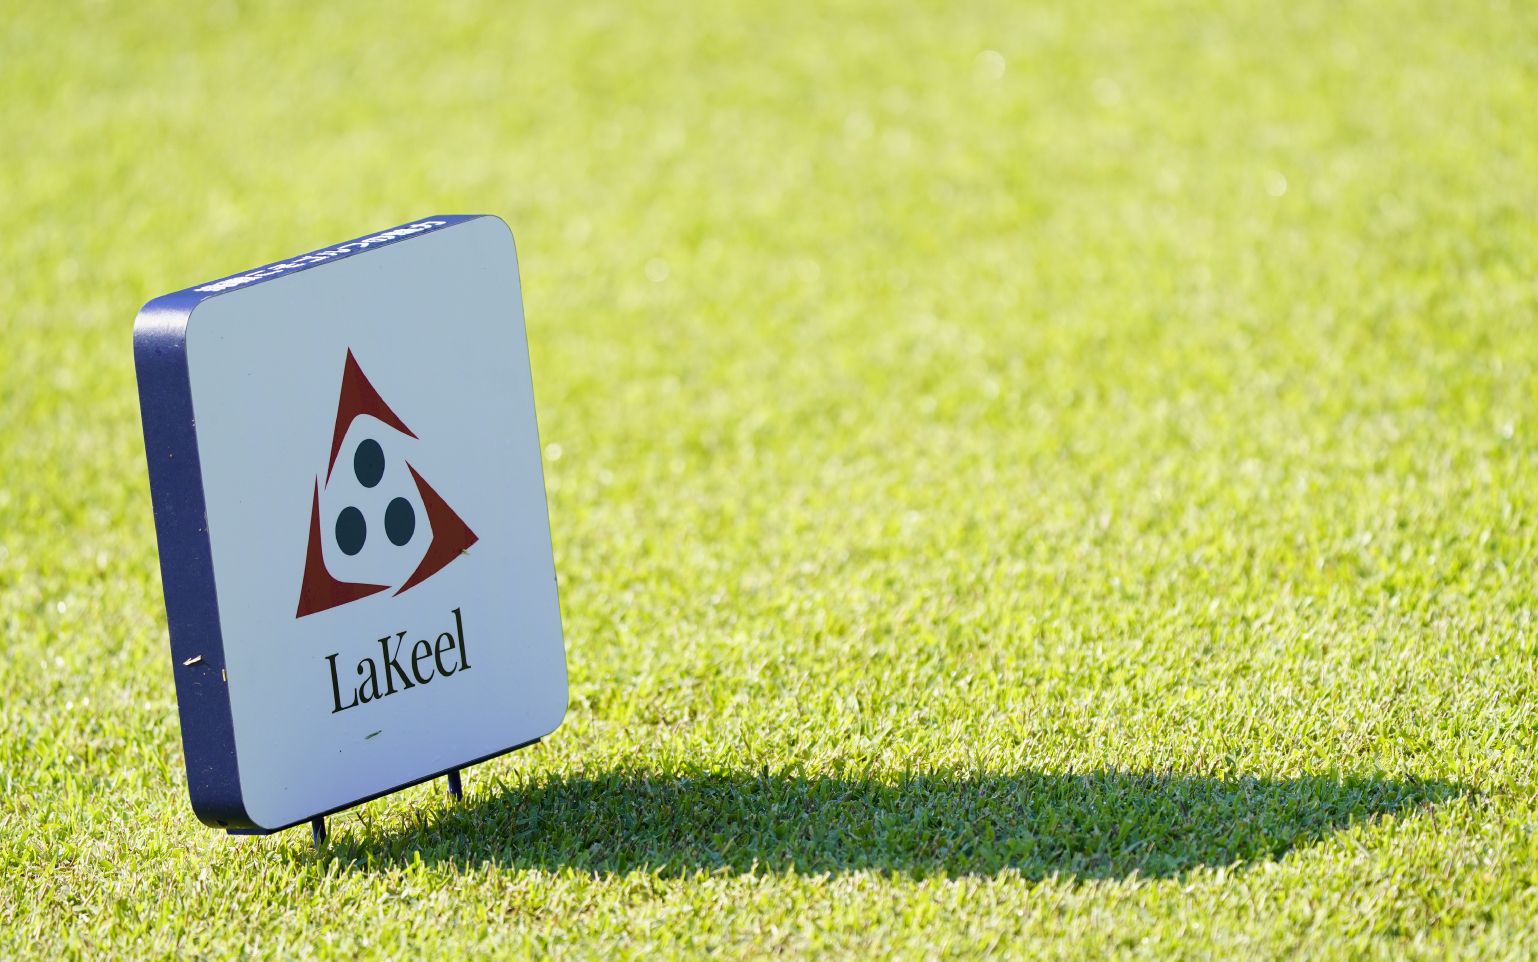 ラキールカップ 日本クラブチームゴルフ選手権
2021年度全国決勝競技実施と2022年度大会開催決定のお知らせ
